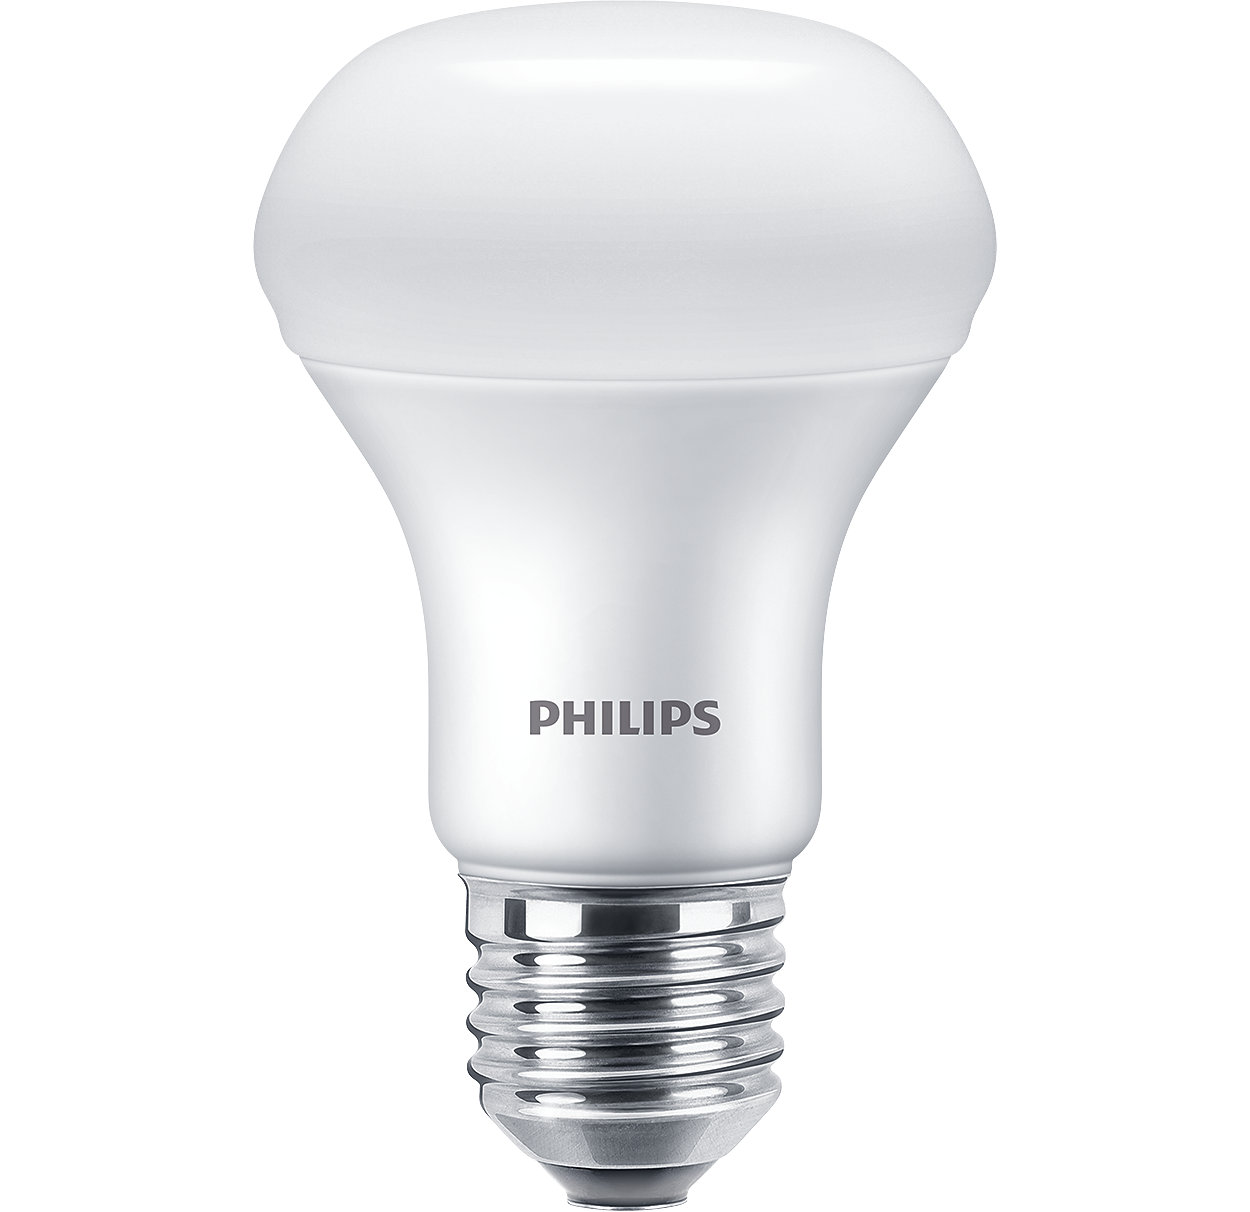 Horzel Voorwaarden aantrekken ESS LEDspot 9W 980lm E27 R63 827 | 929002965887 | Philips lighting